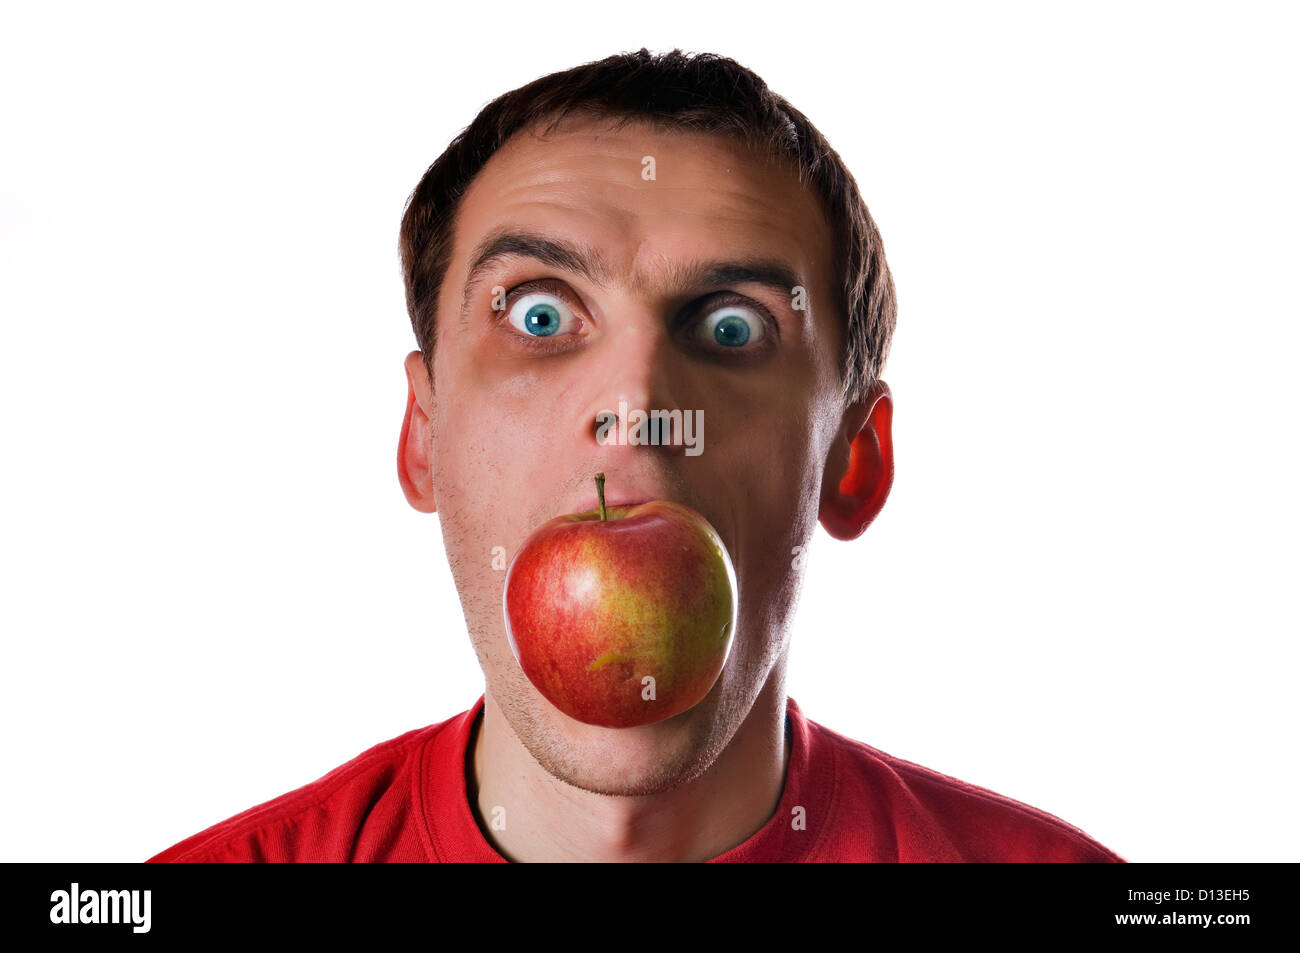 Кидает яблоко. Мужчина с яблоком во рту. Толстый чел с яблоком во рту.